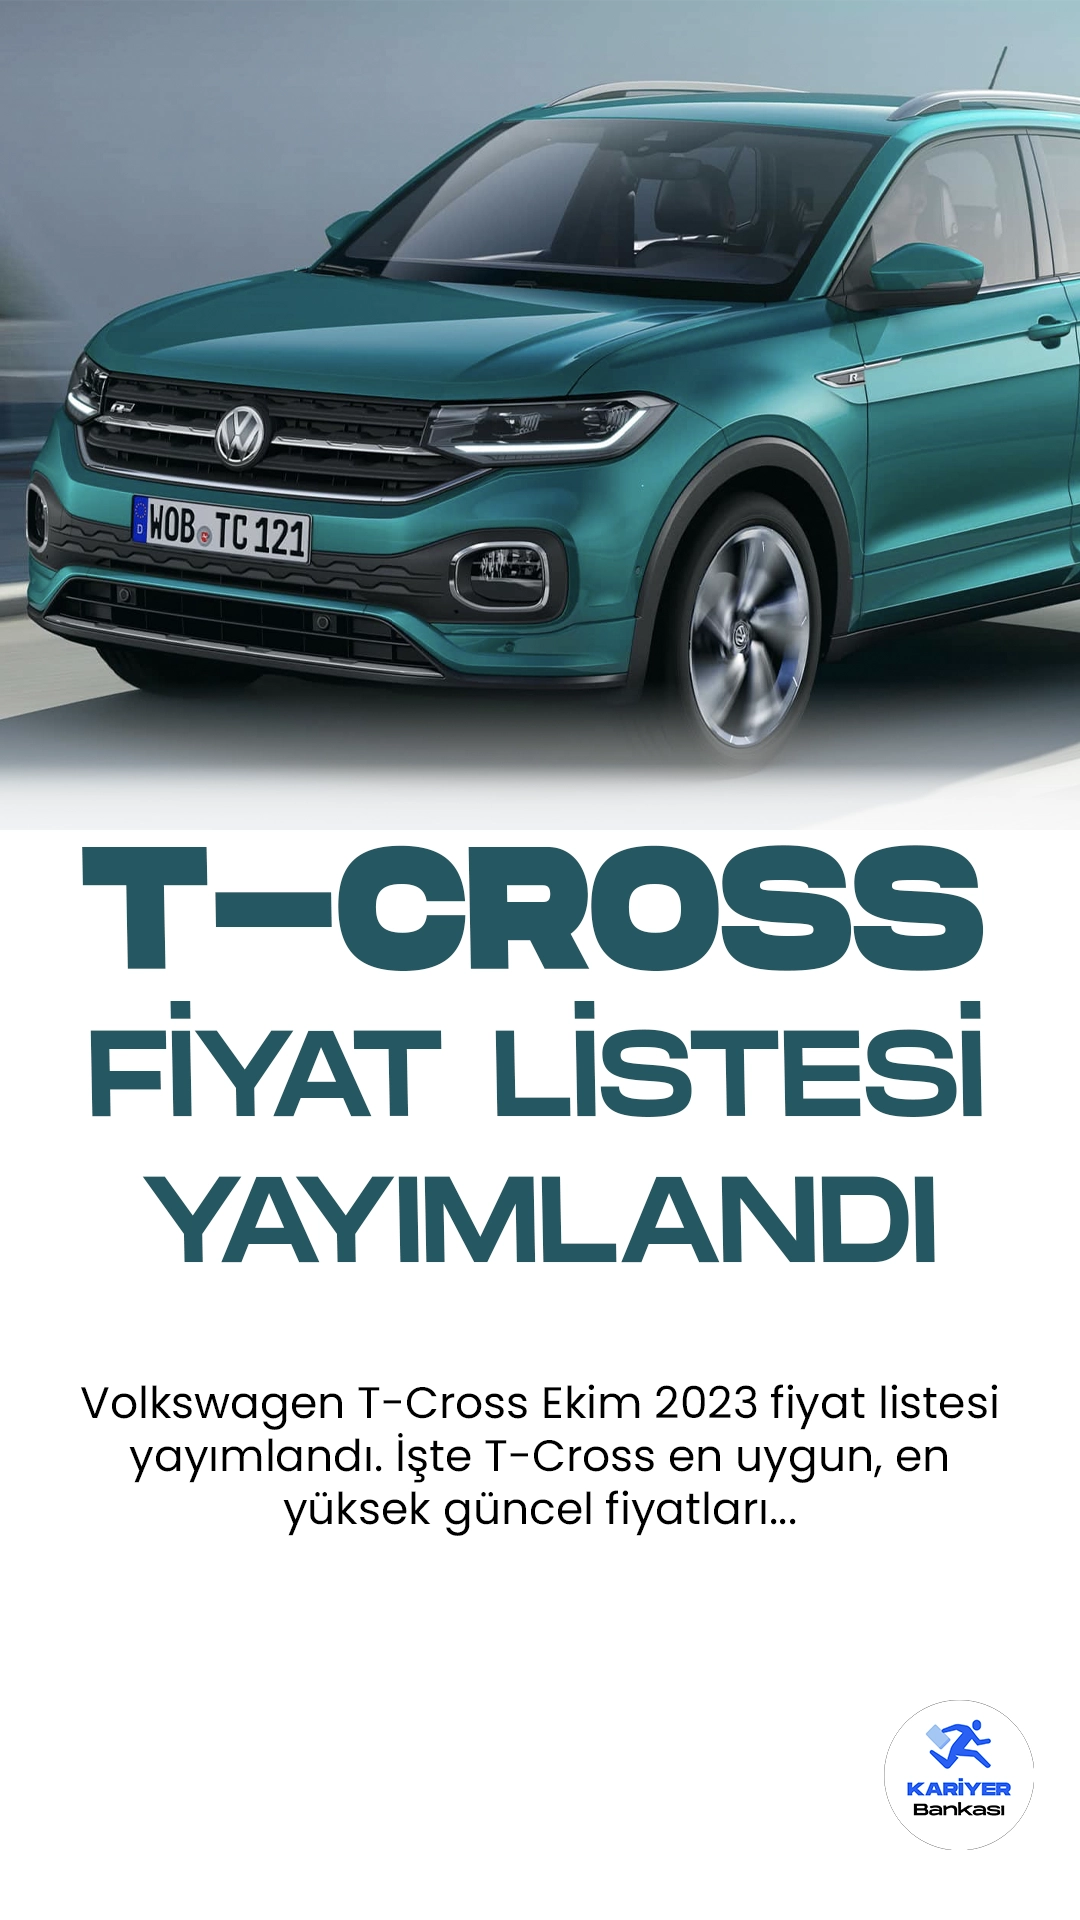 Volkswagen T-Cross Ekim 2023 Fiyat Listesi Yayımlandı.Volkswagen T-Cross, şehir içi sürüşler için mükemmel bir seçenek sunuyor. Bu kompakt SUV, şık tasarımı ve yüksek sürüş pozisyonu ile dikkat çekiyor.